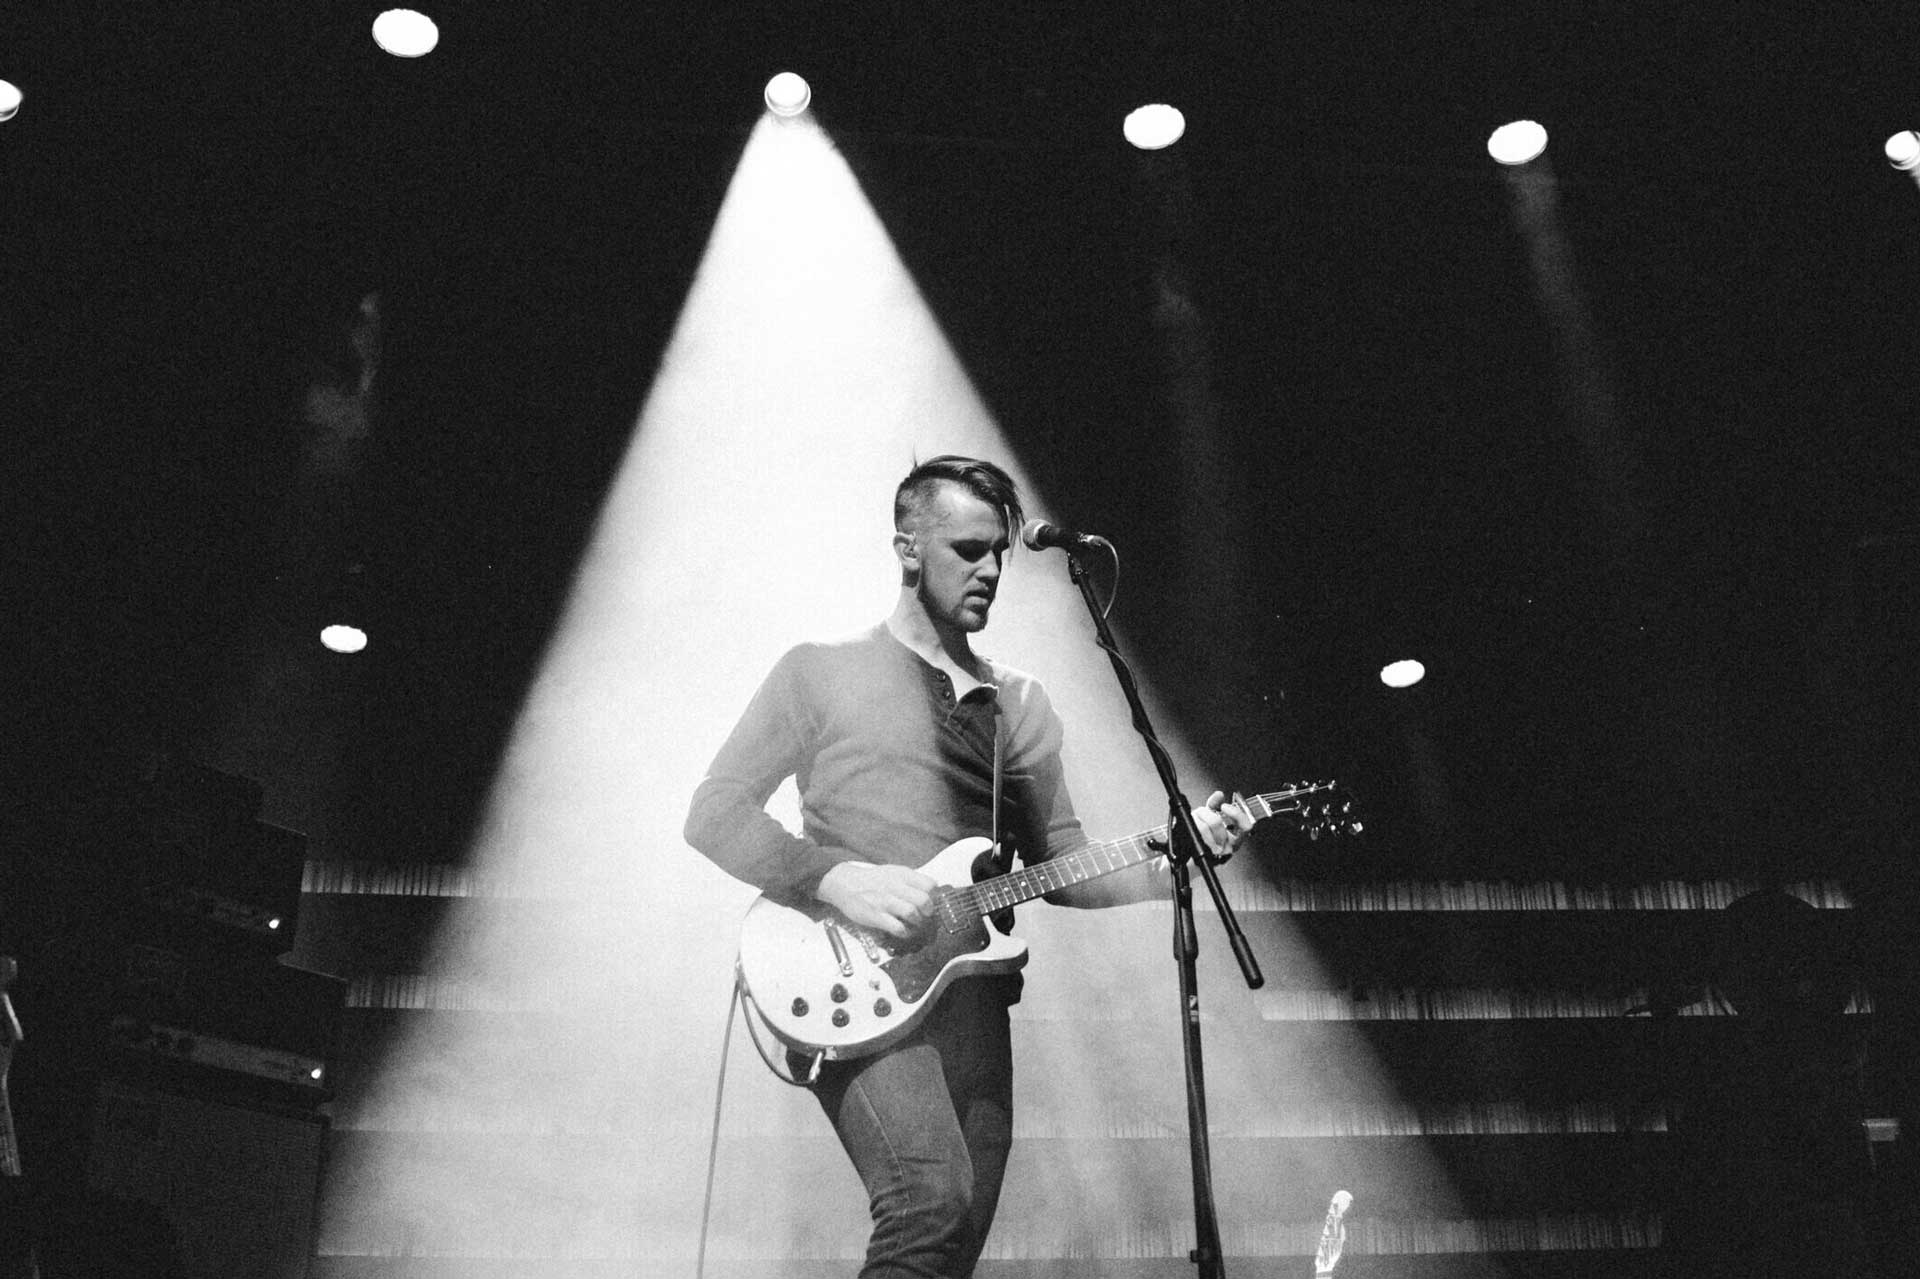 Pemuzik Peter Ferguson di atas pentas dengan gitar dan mikrofon di bawah lampu sorot